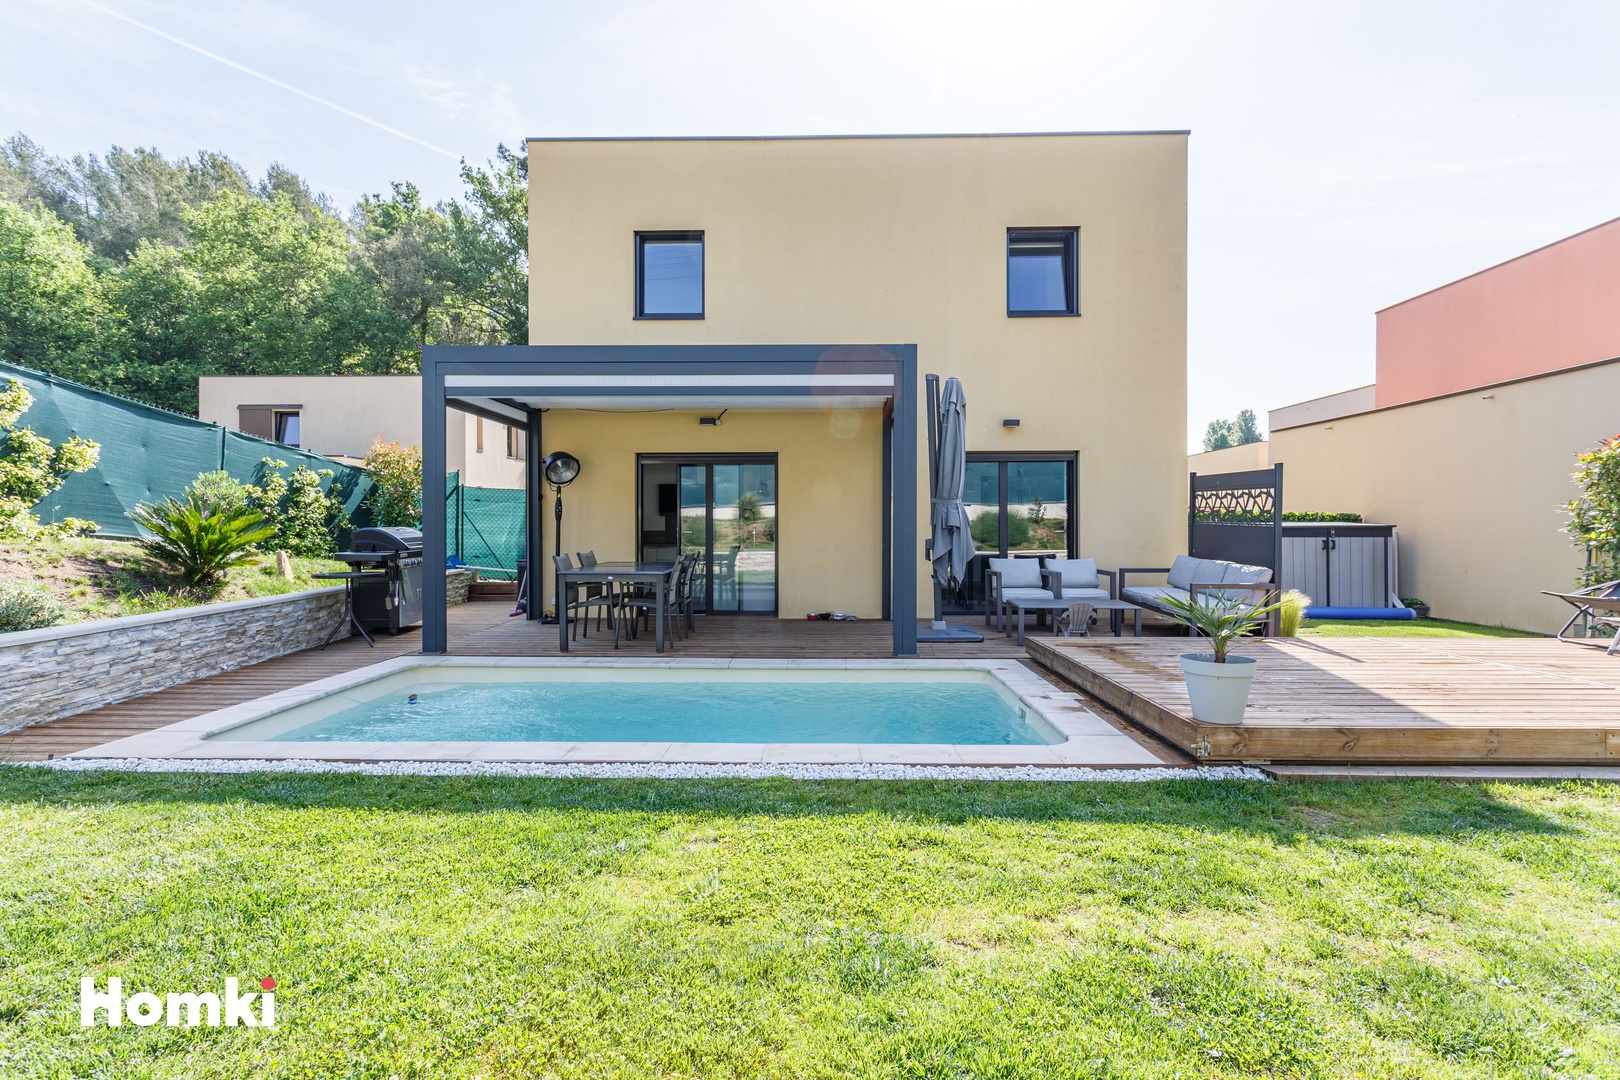 Homki - Vente Maison/villa  de 93.0 m² à Biot 06410